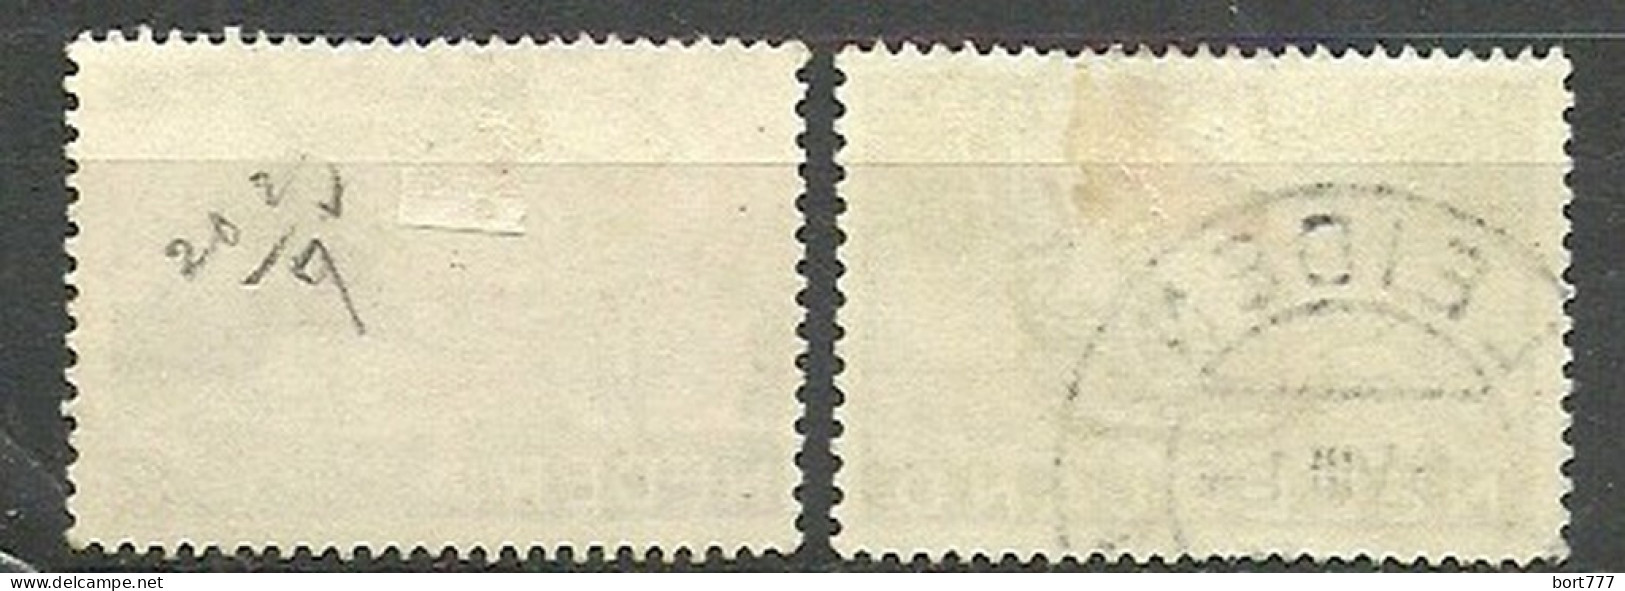 Netherlands 1934 Year, Used Stamps ,Mi 274-75 - Gebraucht